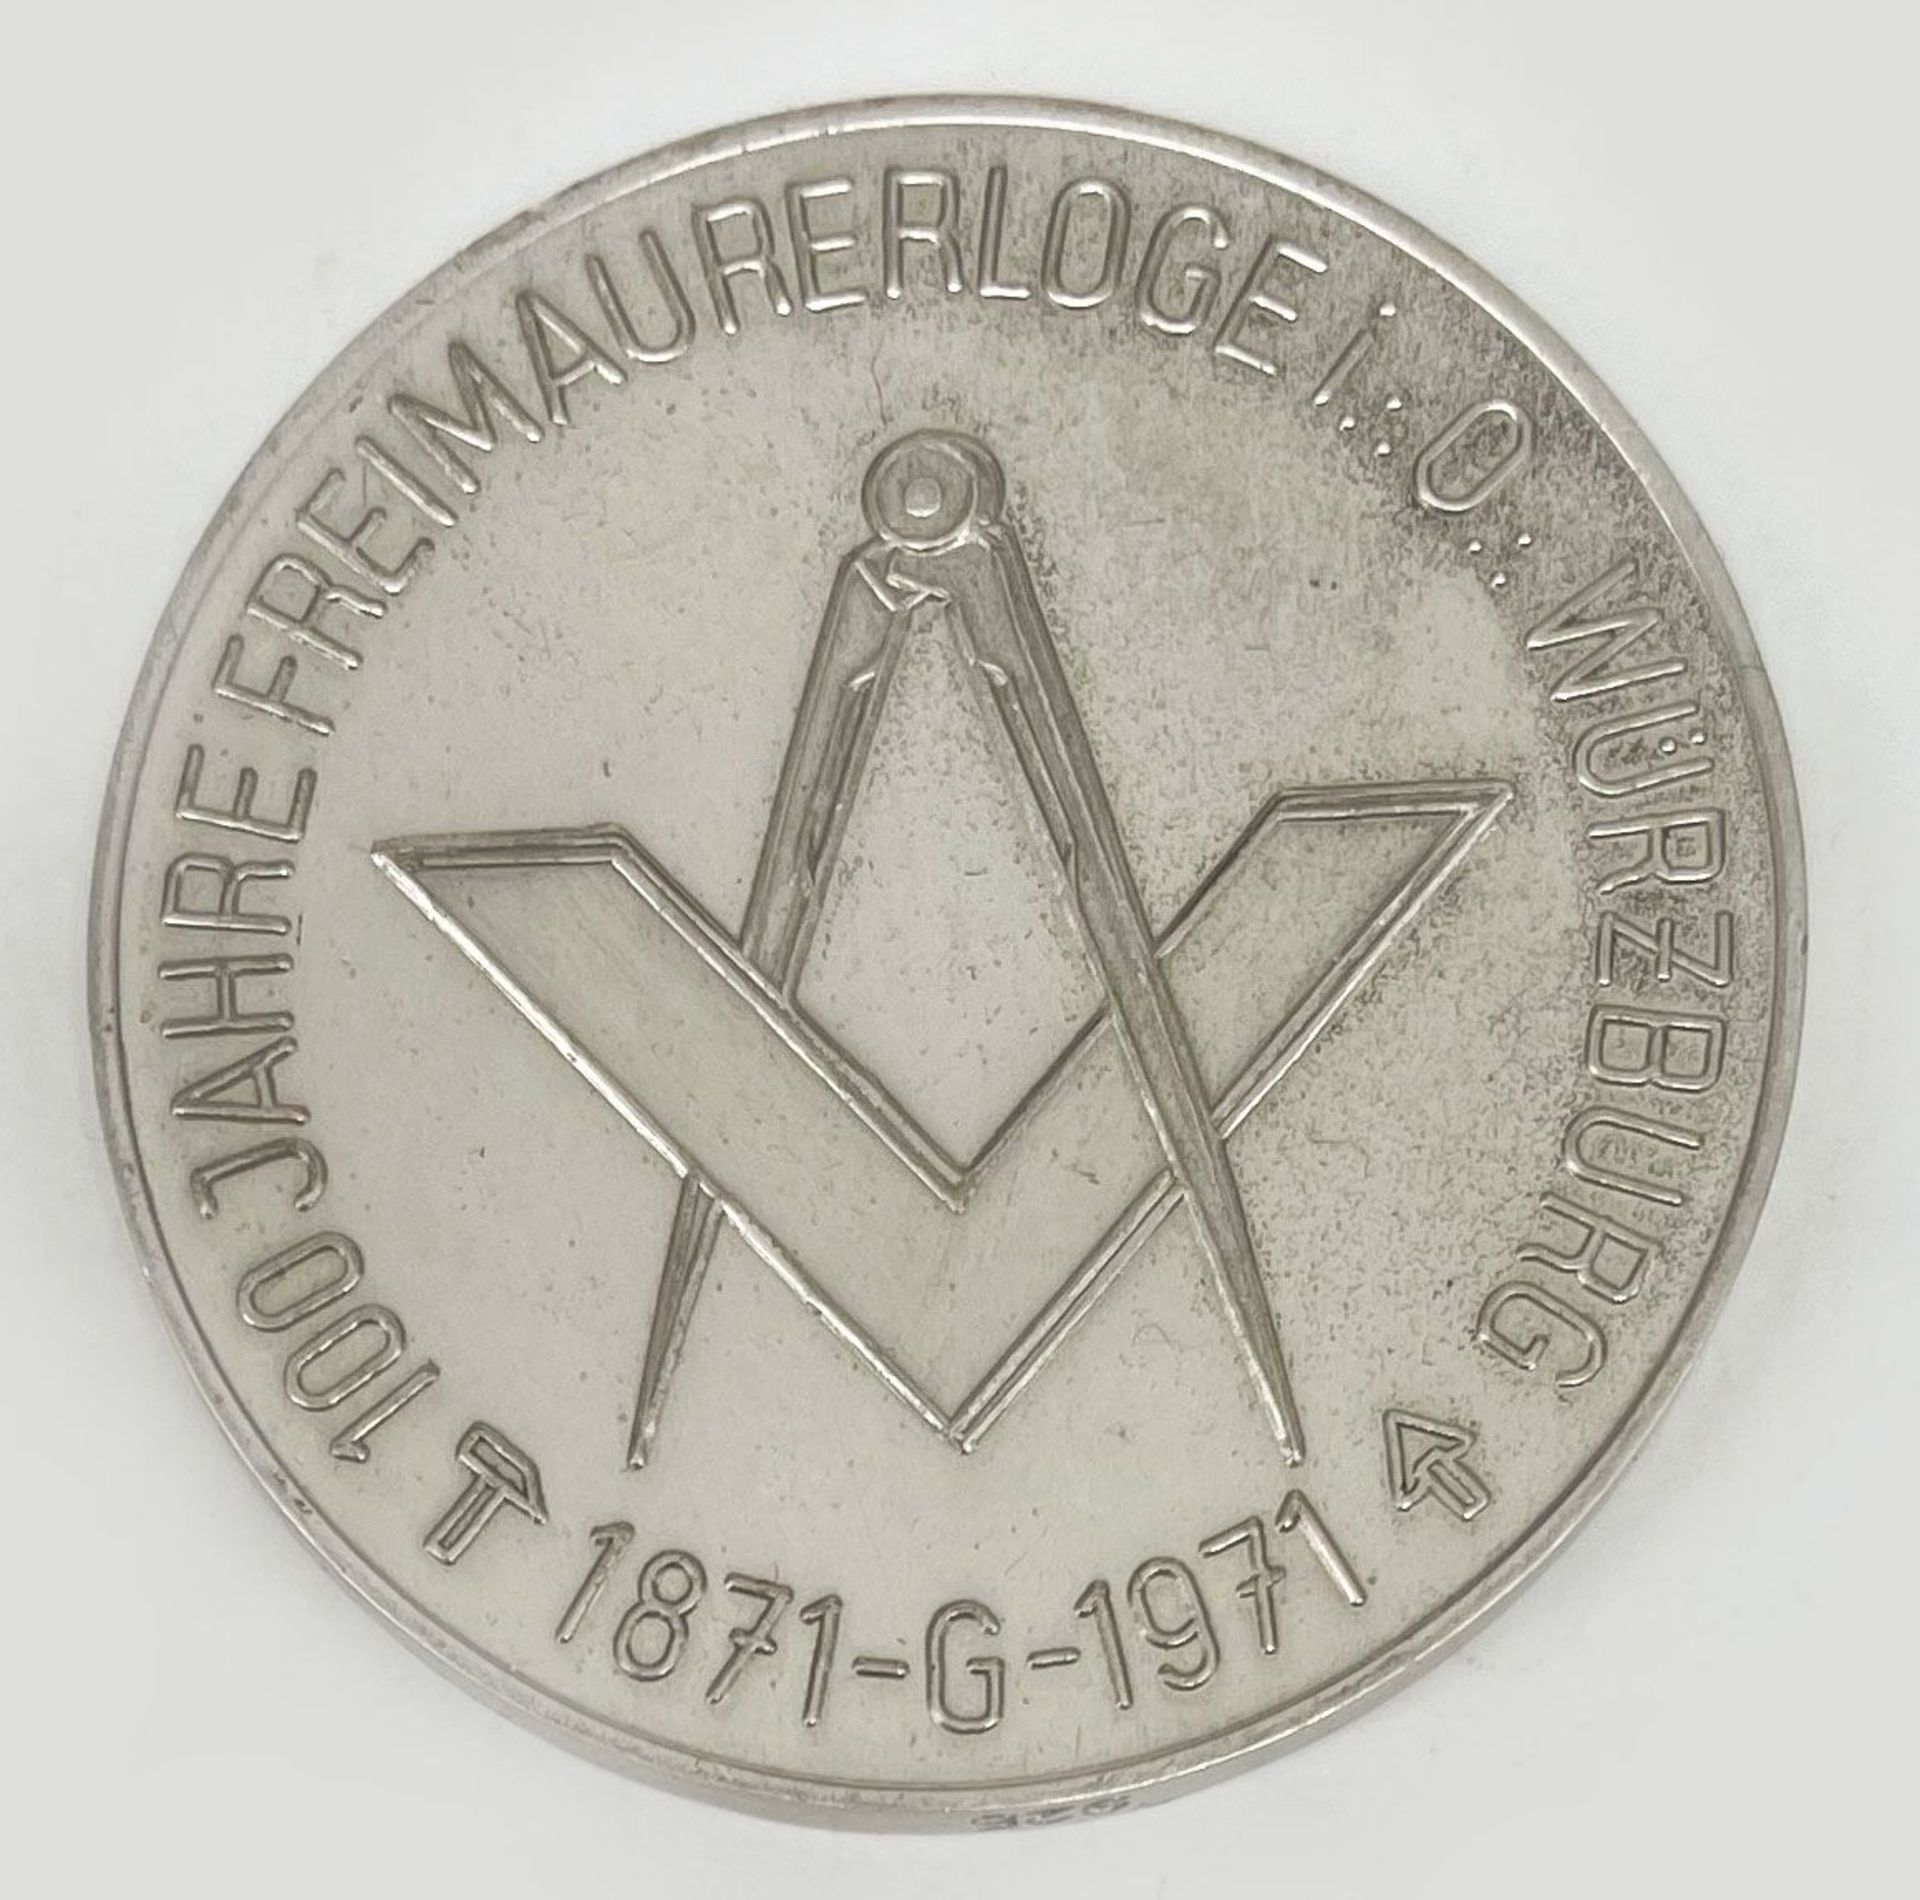 Freimaurer Medaille Würzburg, 925er Silber, Schriftzug "Johannisloge zu den zwei Säulen an der